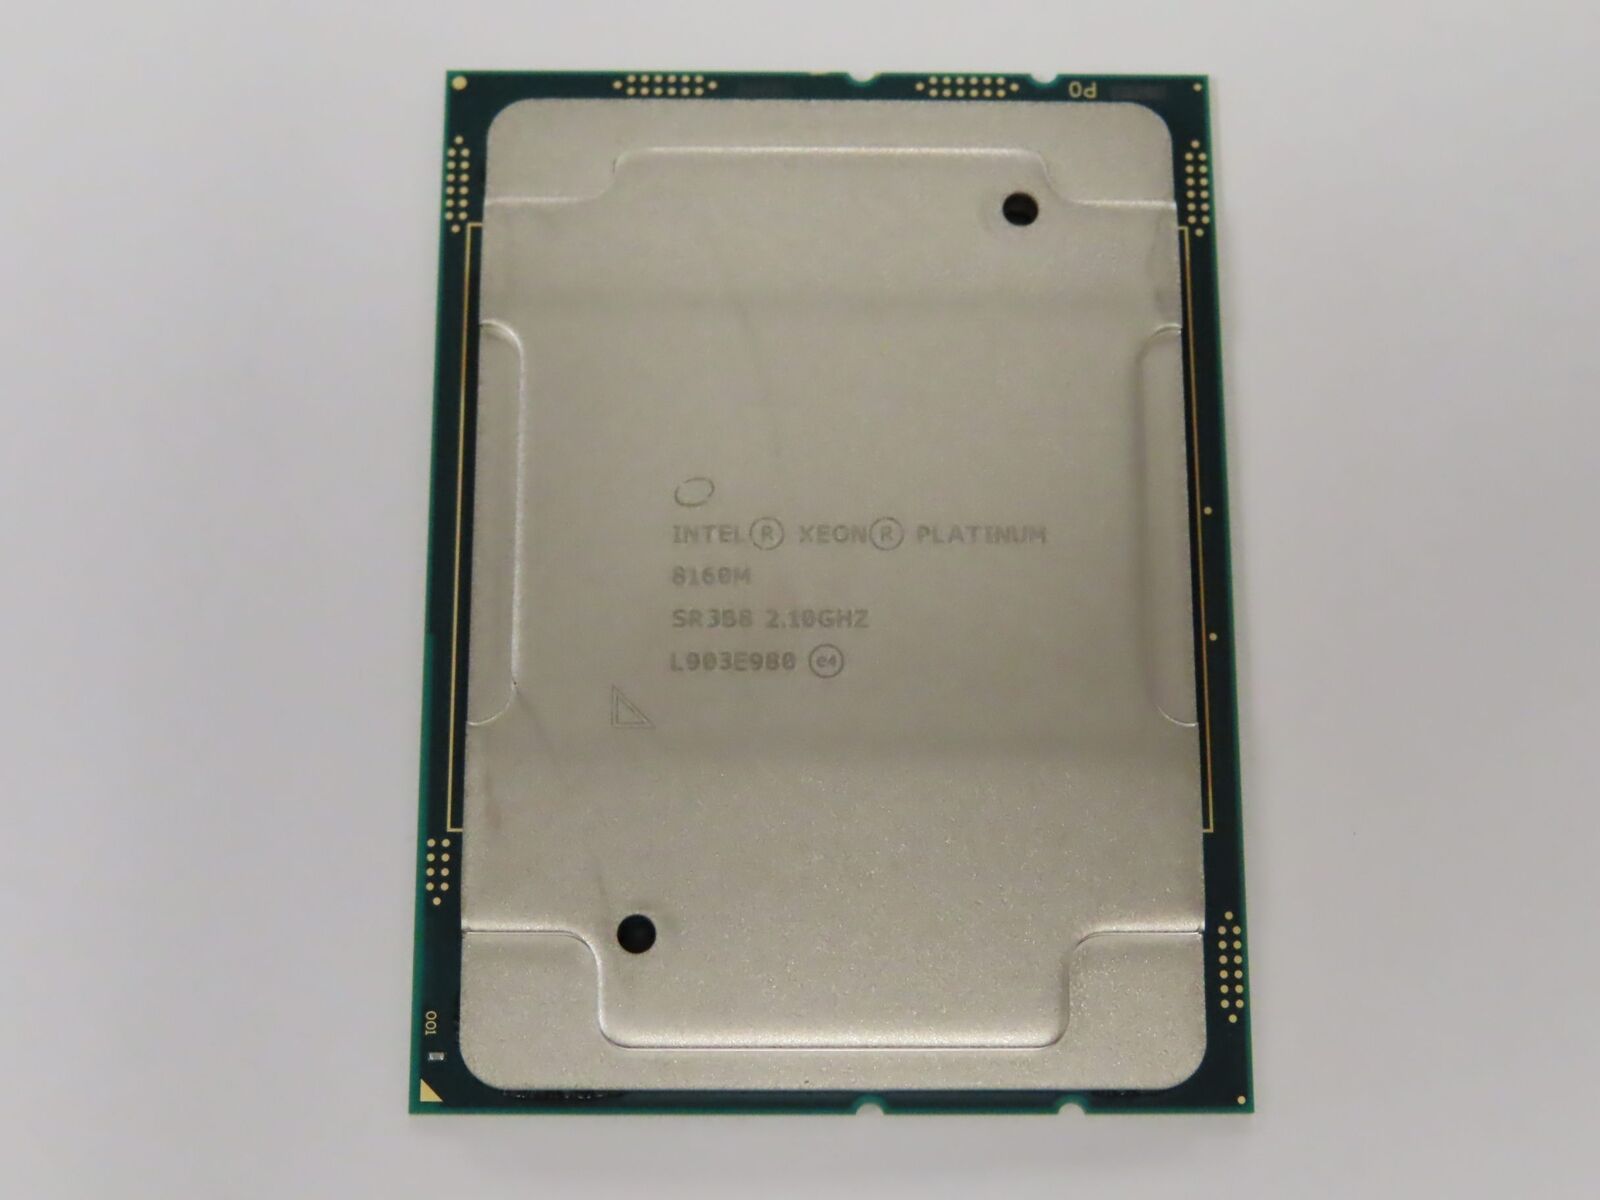 Intel Xeon Platinum 8160M 2.1 GHz 24 Core 33 MB LGA3647 CPU/Processor SR3B8